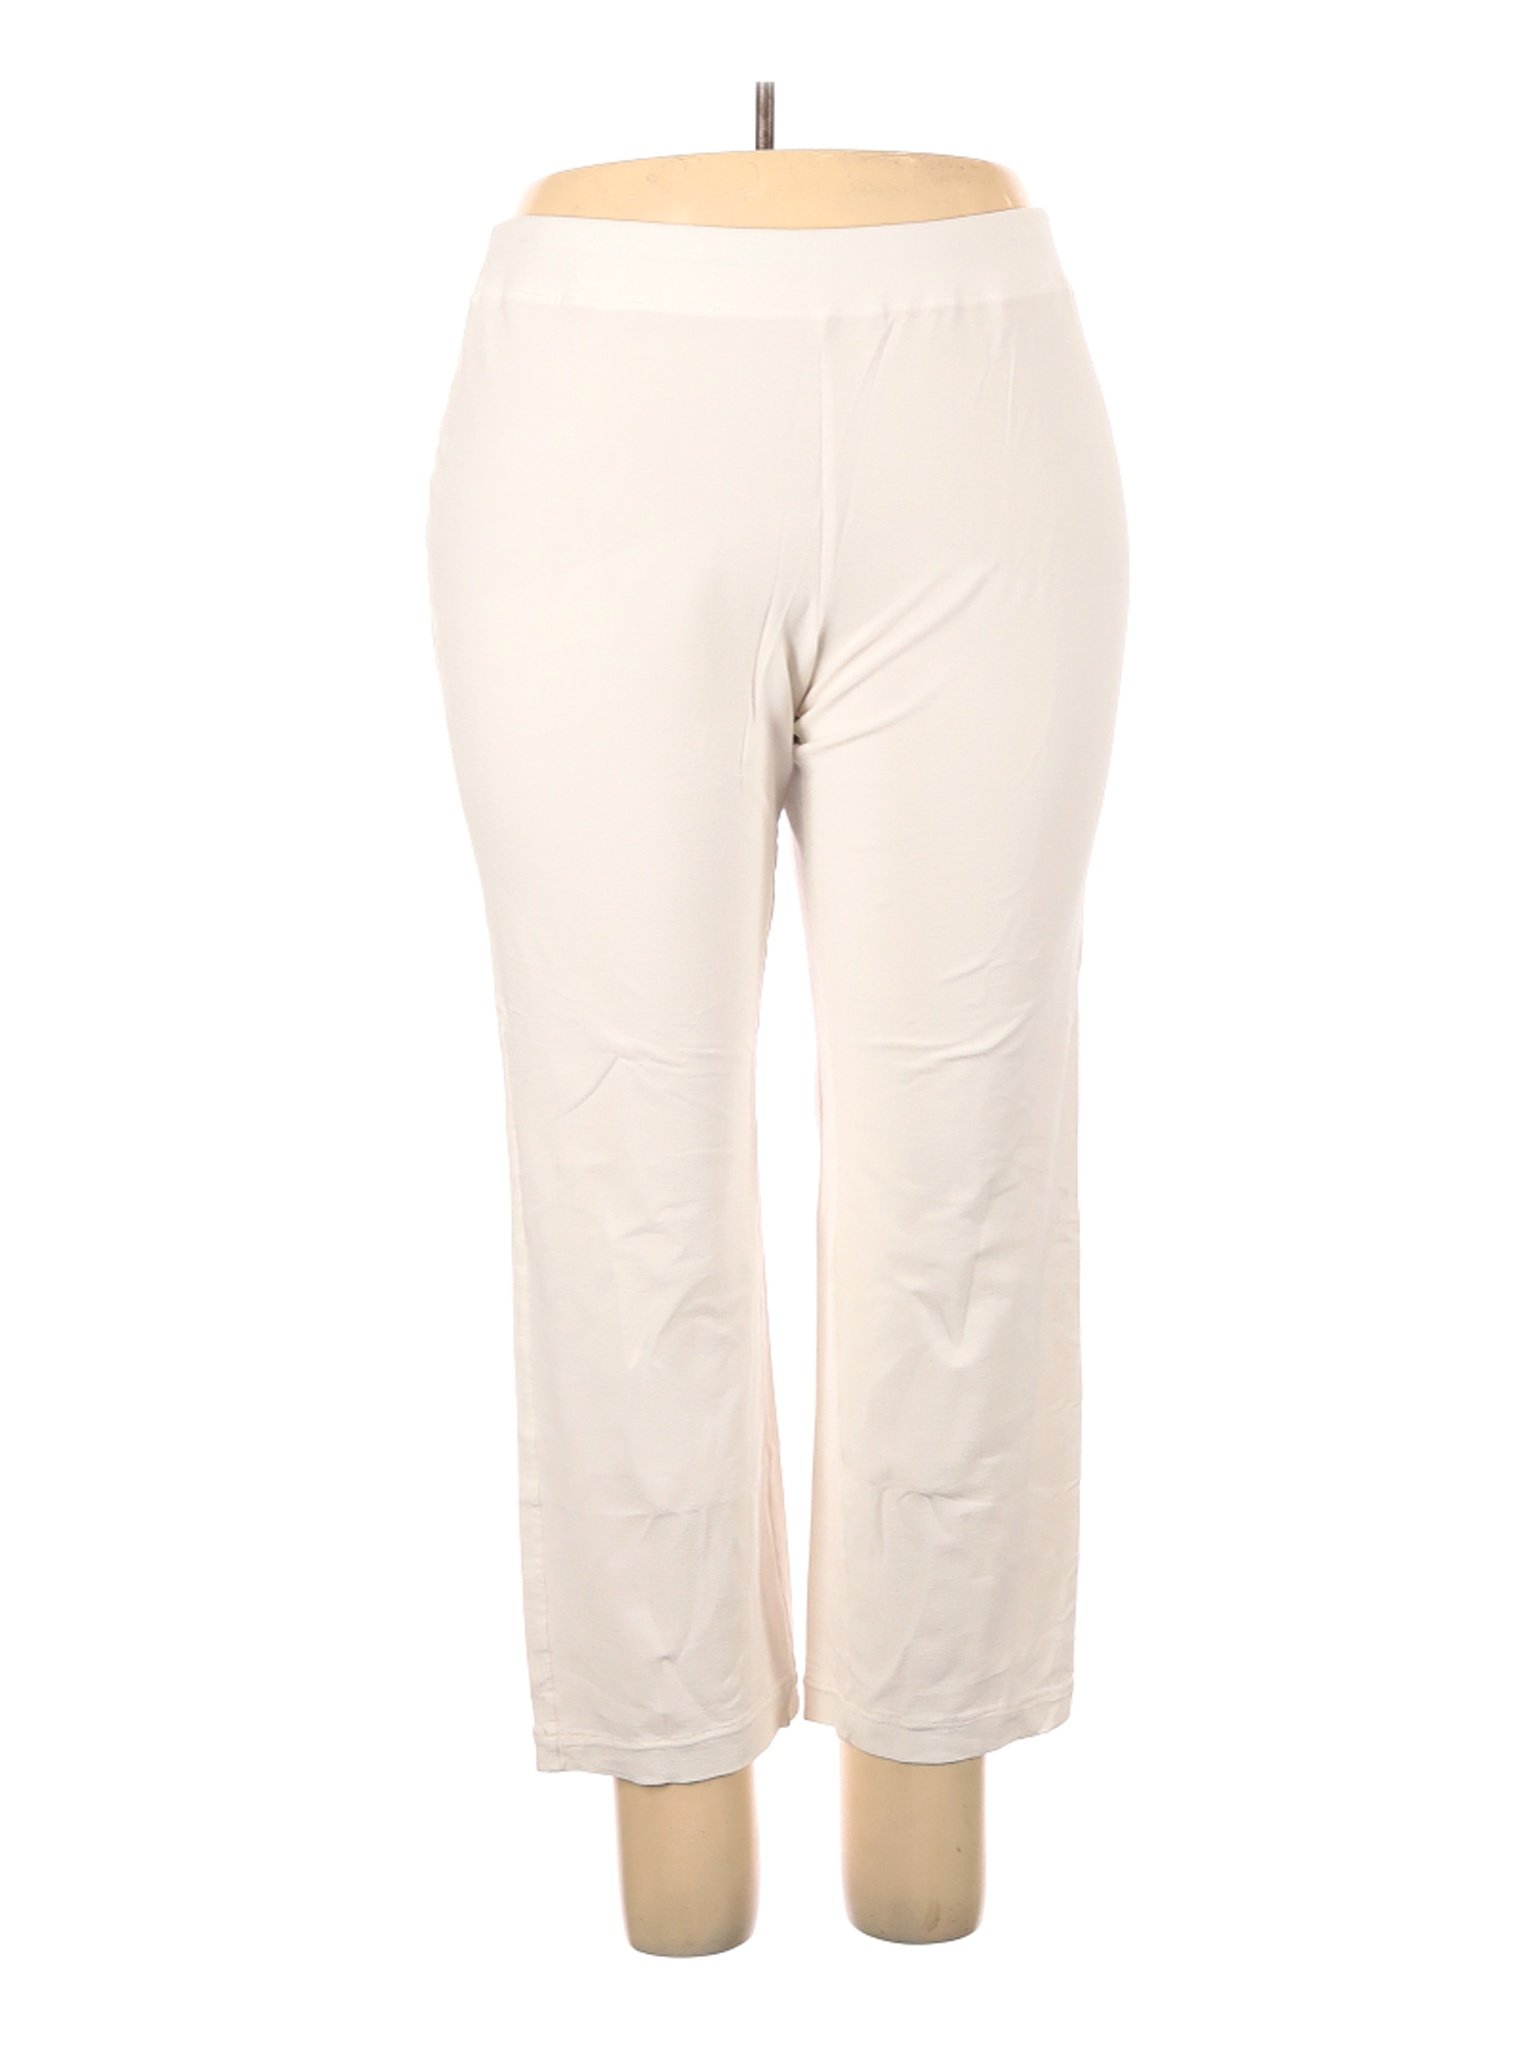 Eileen Fisher Women Ivory Dress Pants 2X Plus | eBay